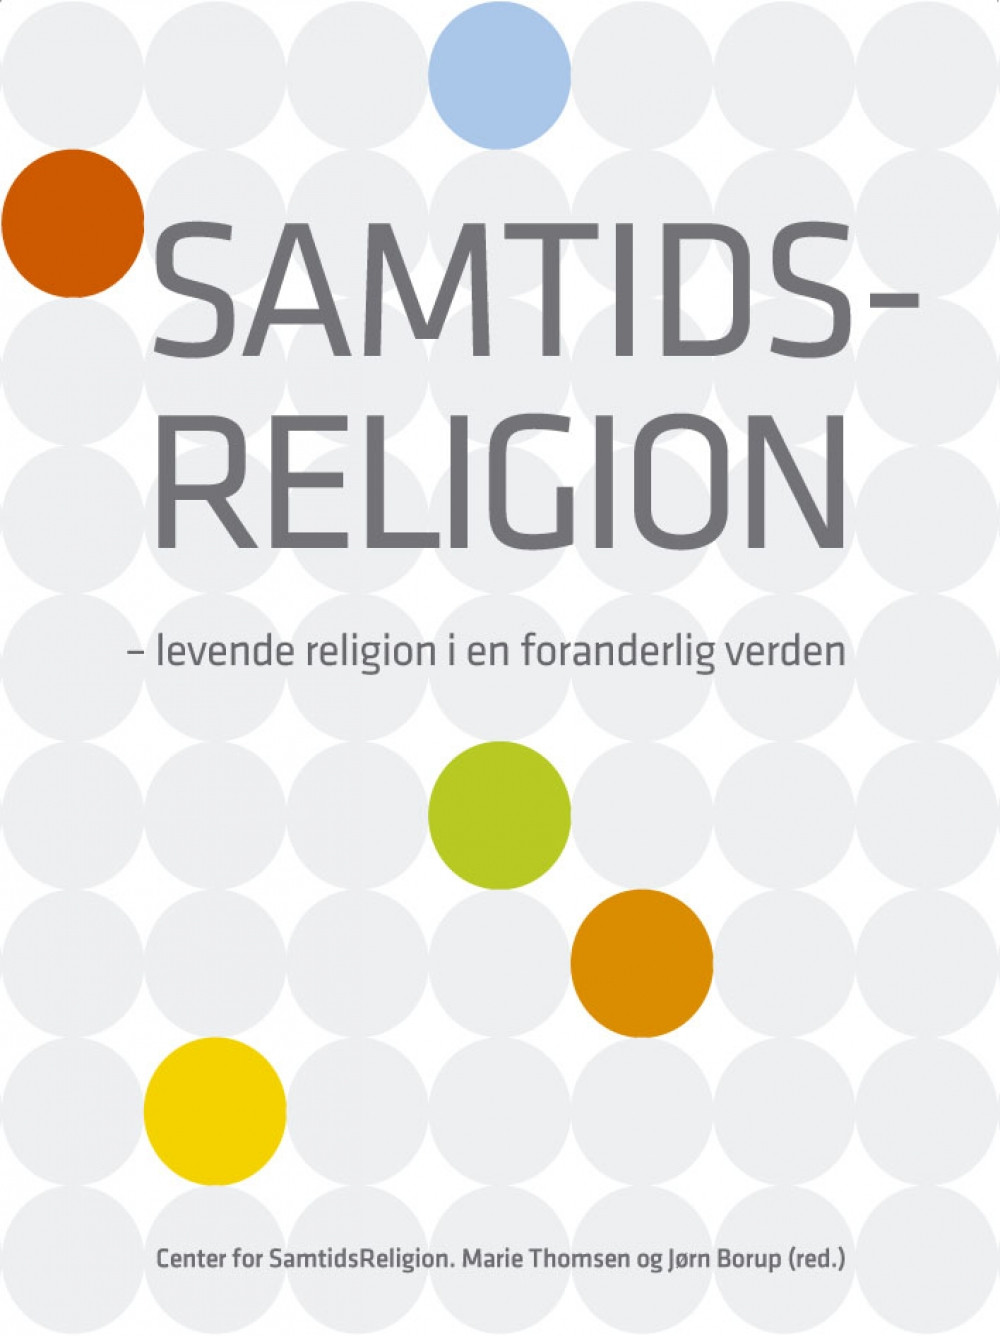 Samtidsreligion - levende religion i en foranderlig verden<br>Læs mere her